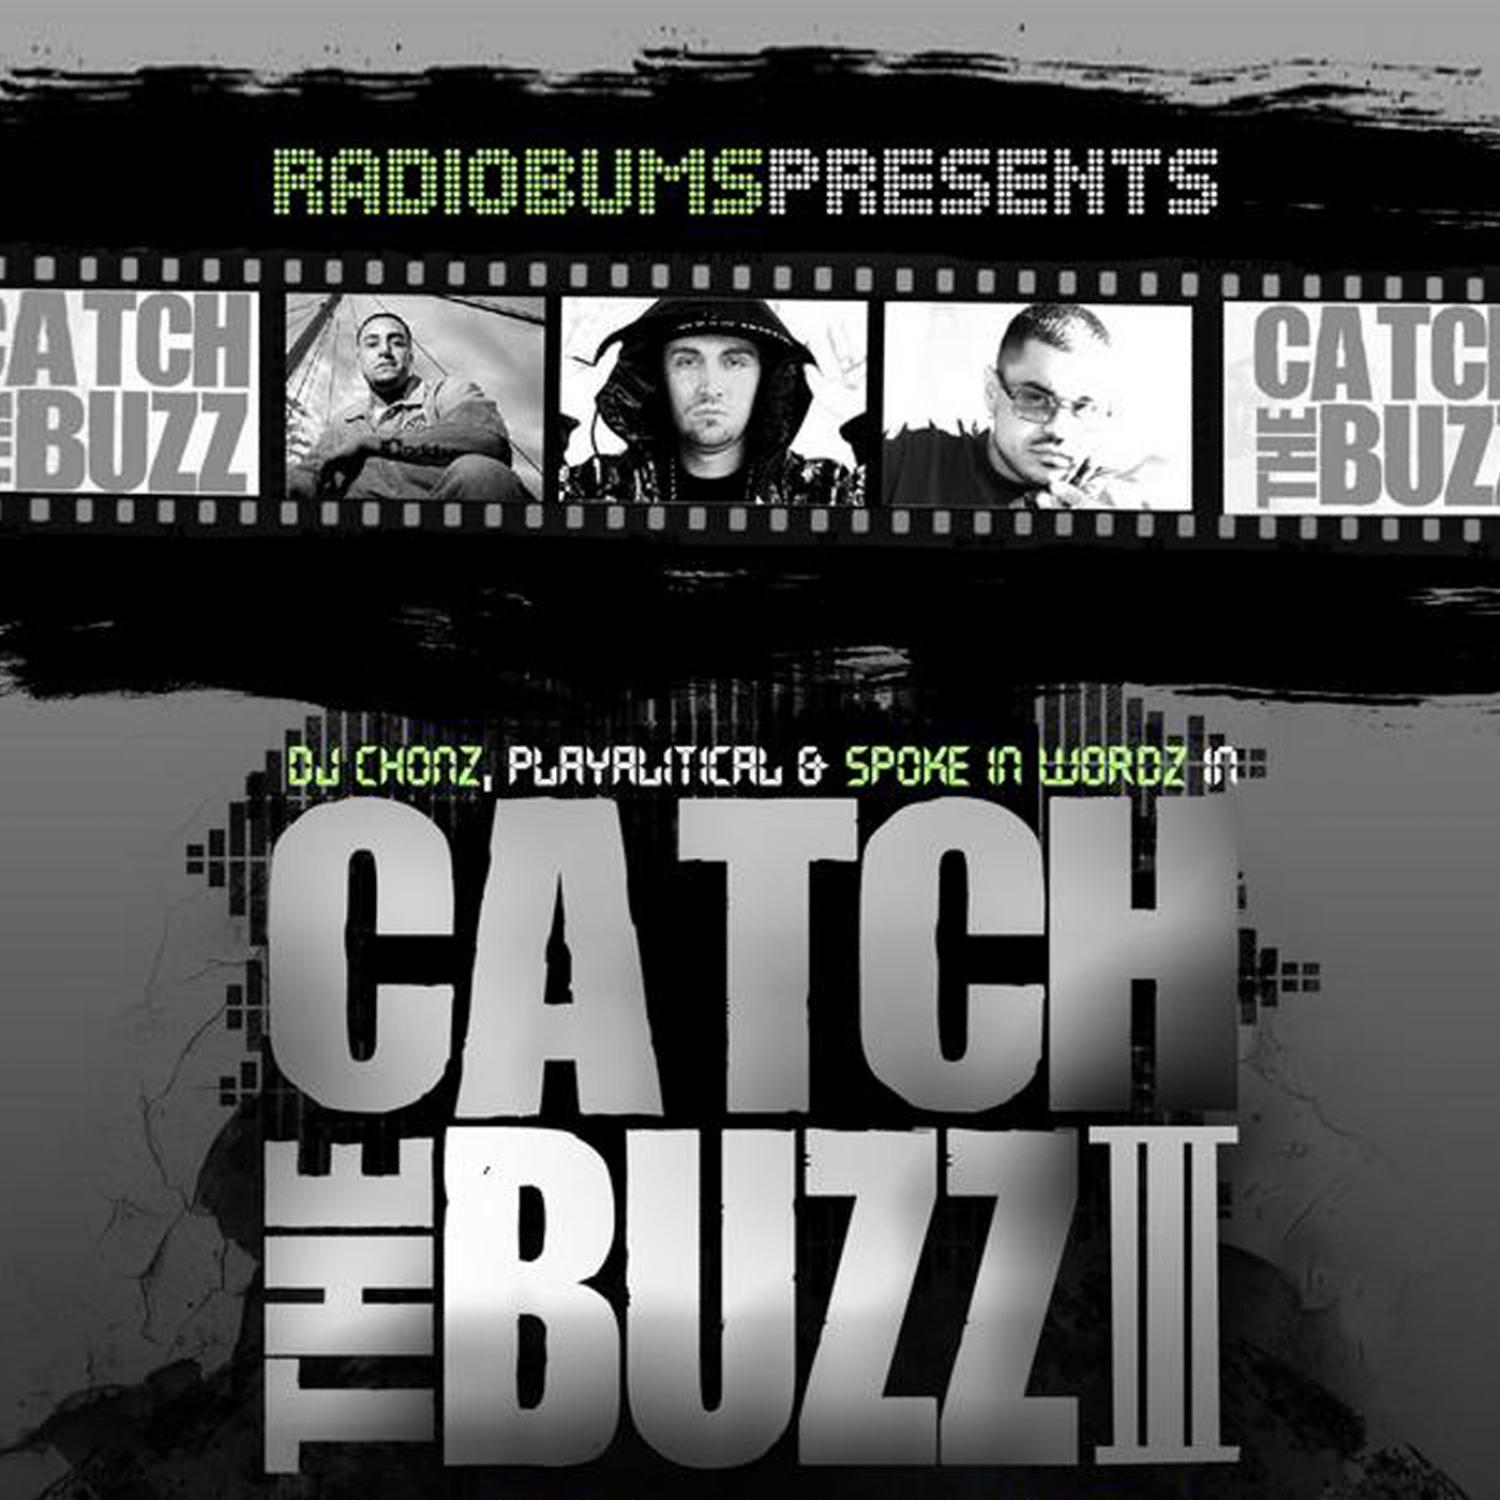 Catch the Buzz III